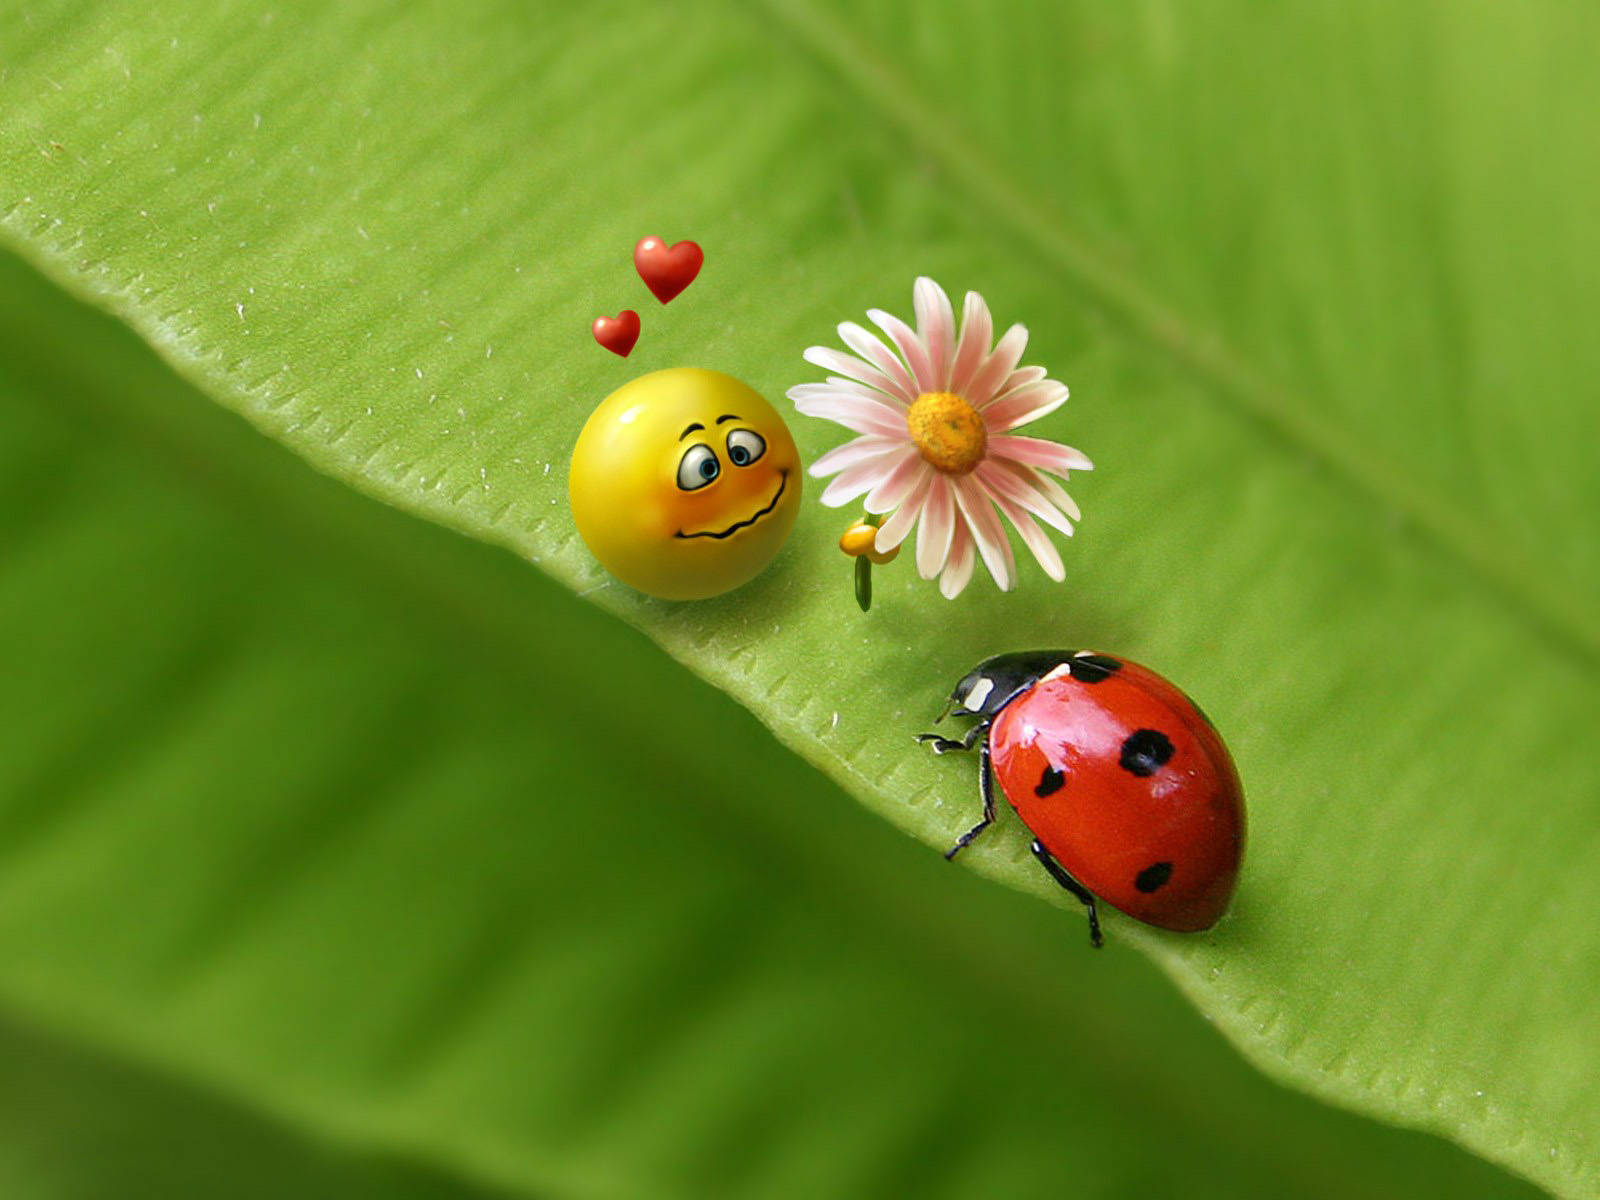 Ladybug And A Smiley Emoji Wallpaper